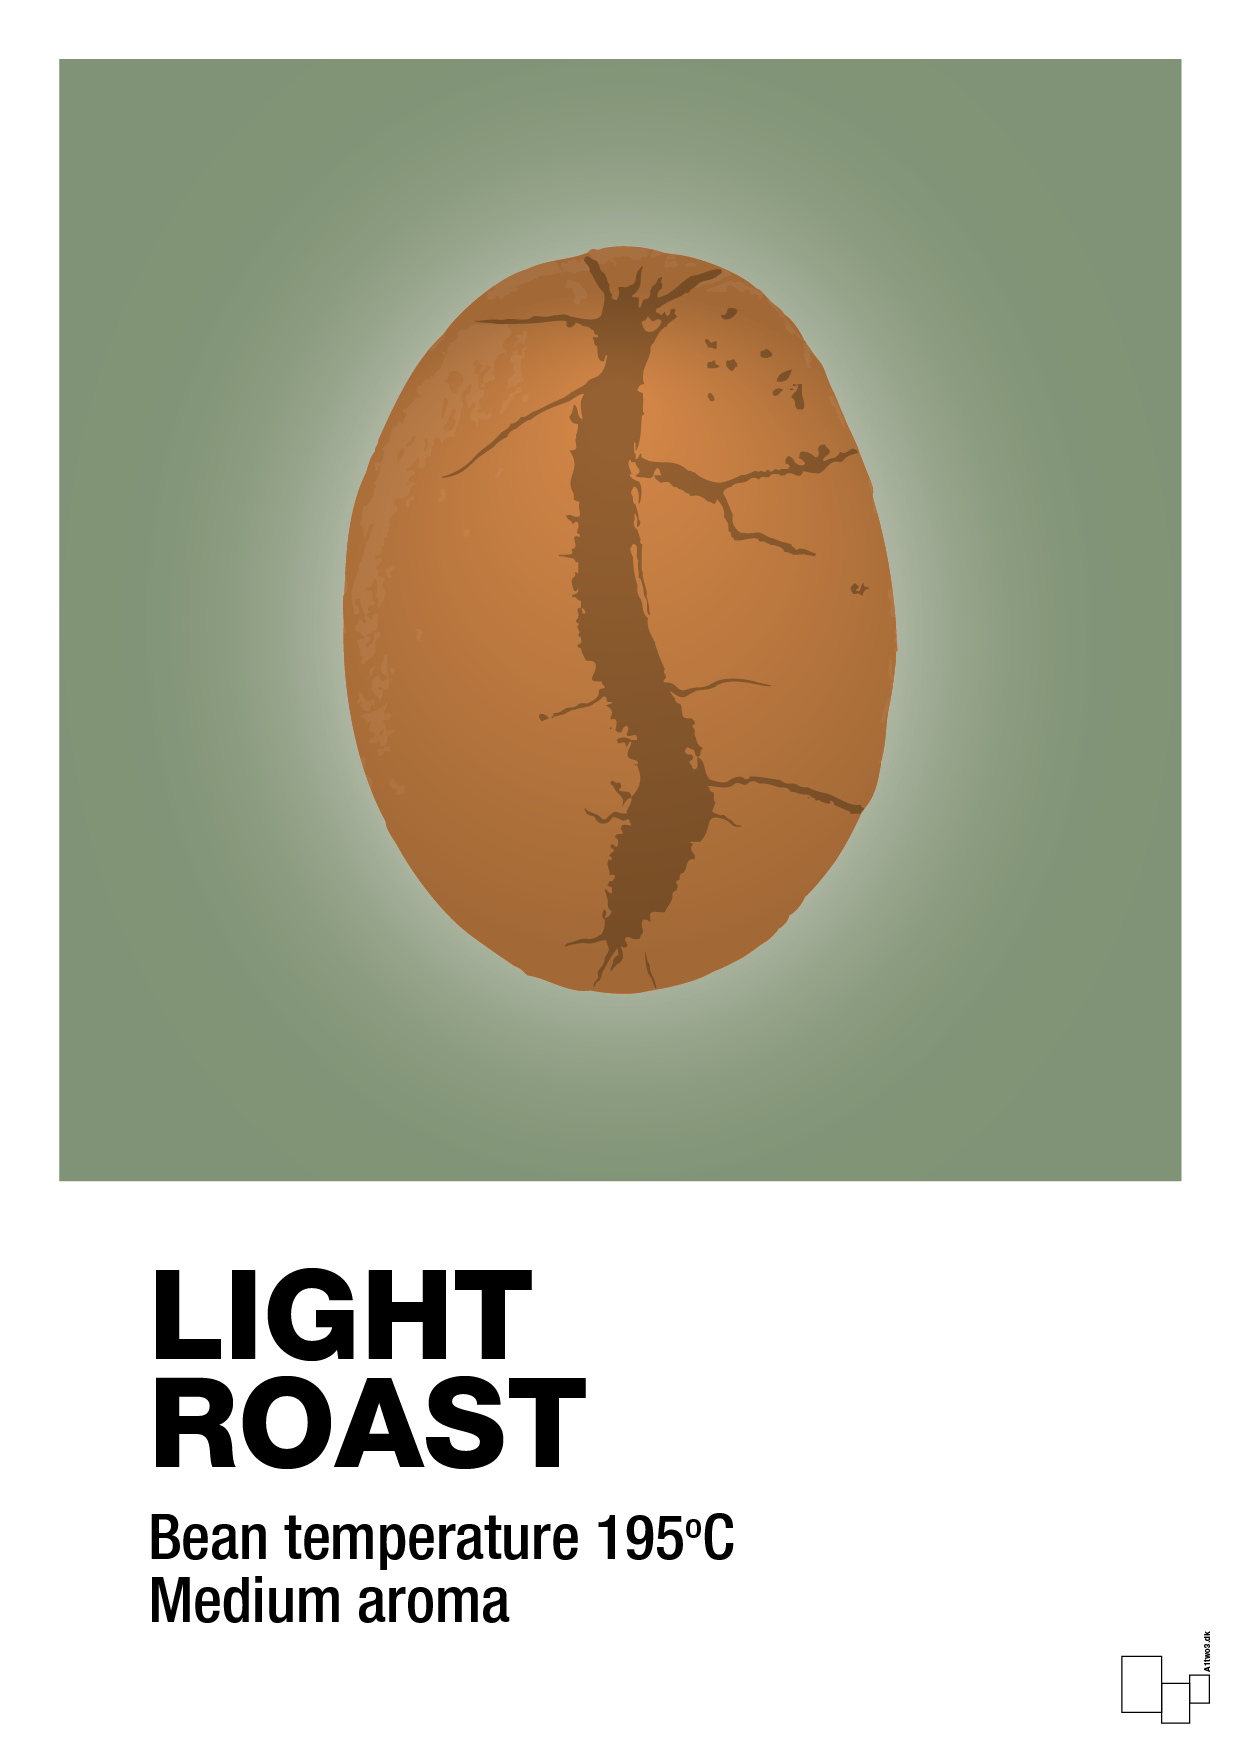 light roast - Plakat med Mad & Drikke i Jade